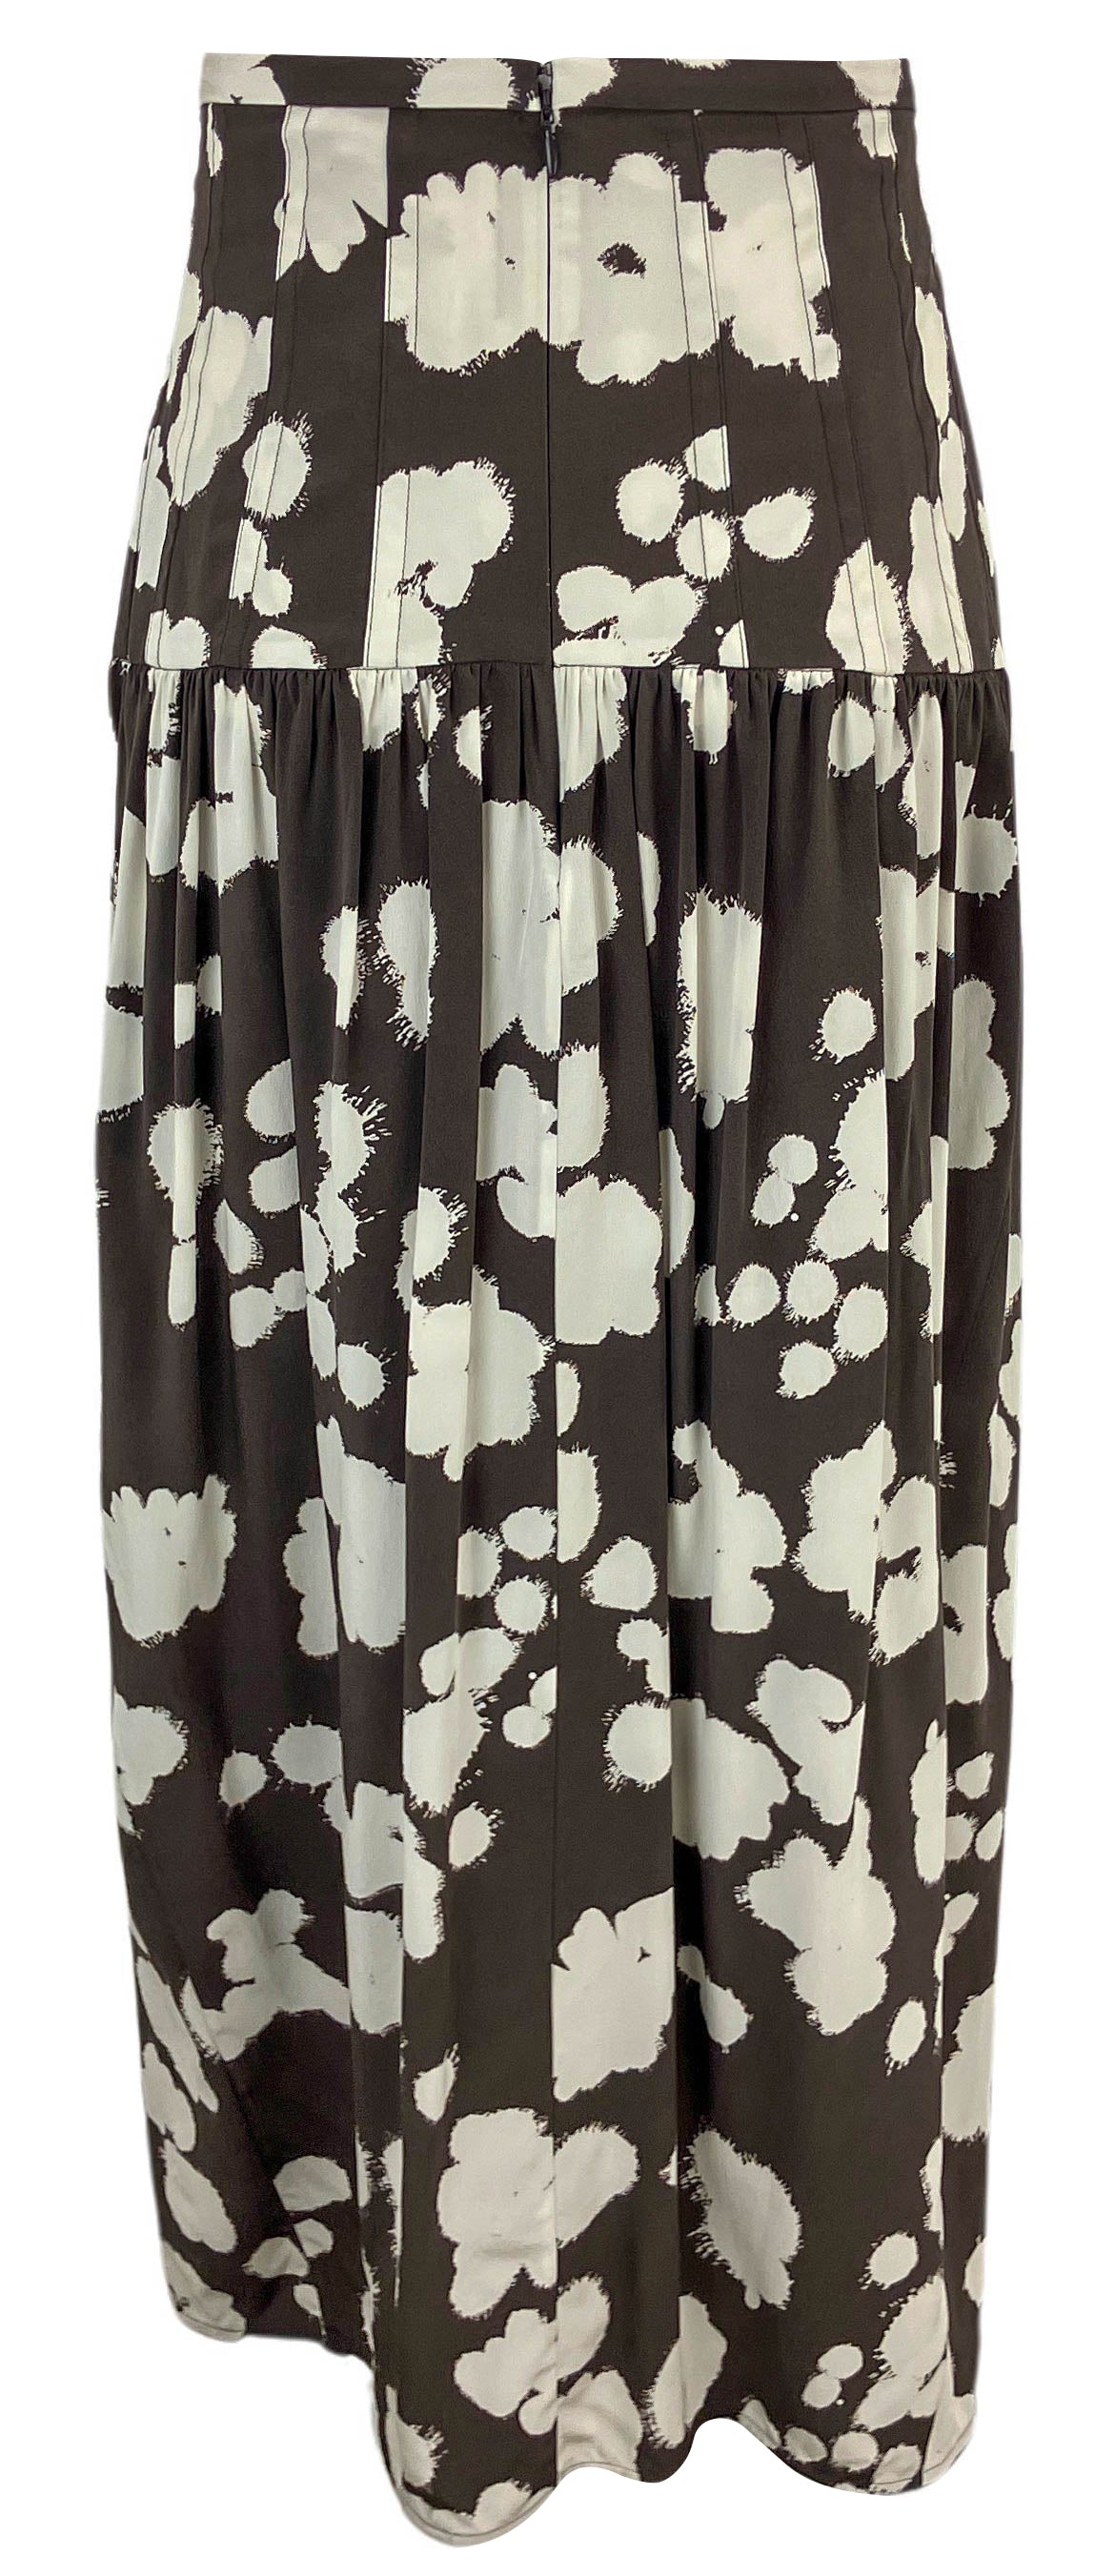 Lee Mathews Clover Skirt in Tiramisu - Discounts on Lee Mathews at UAL